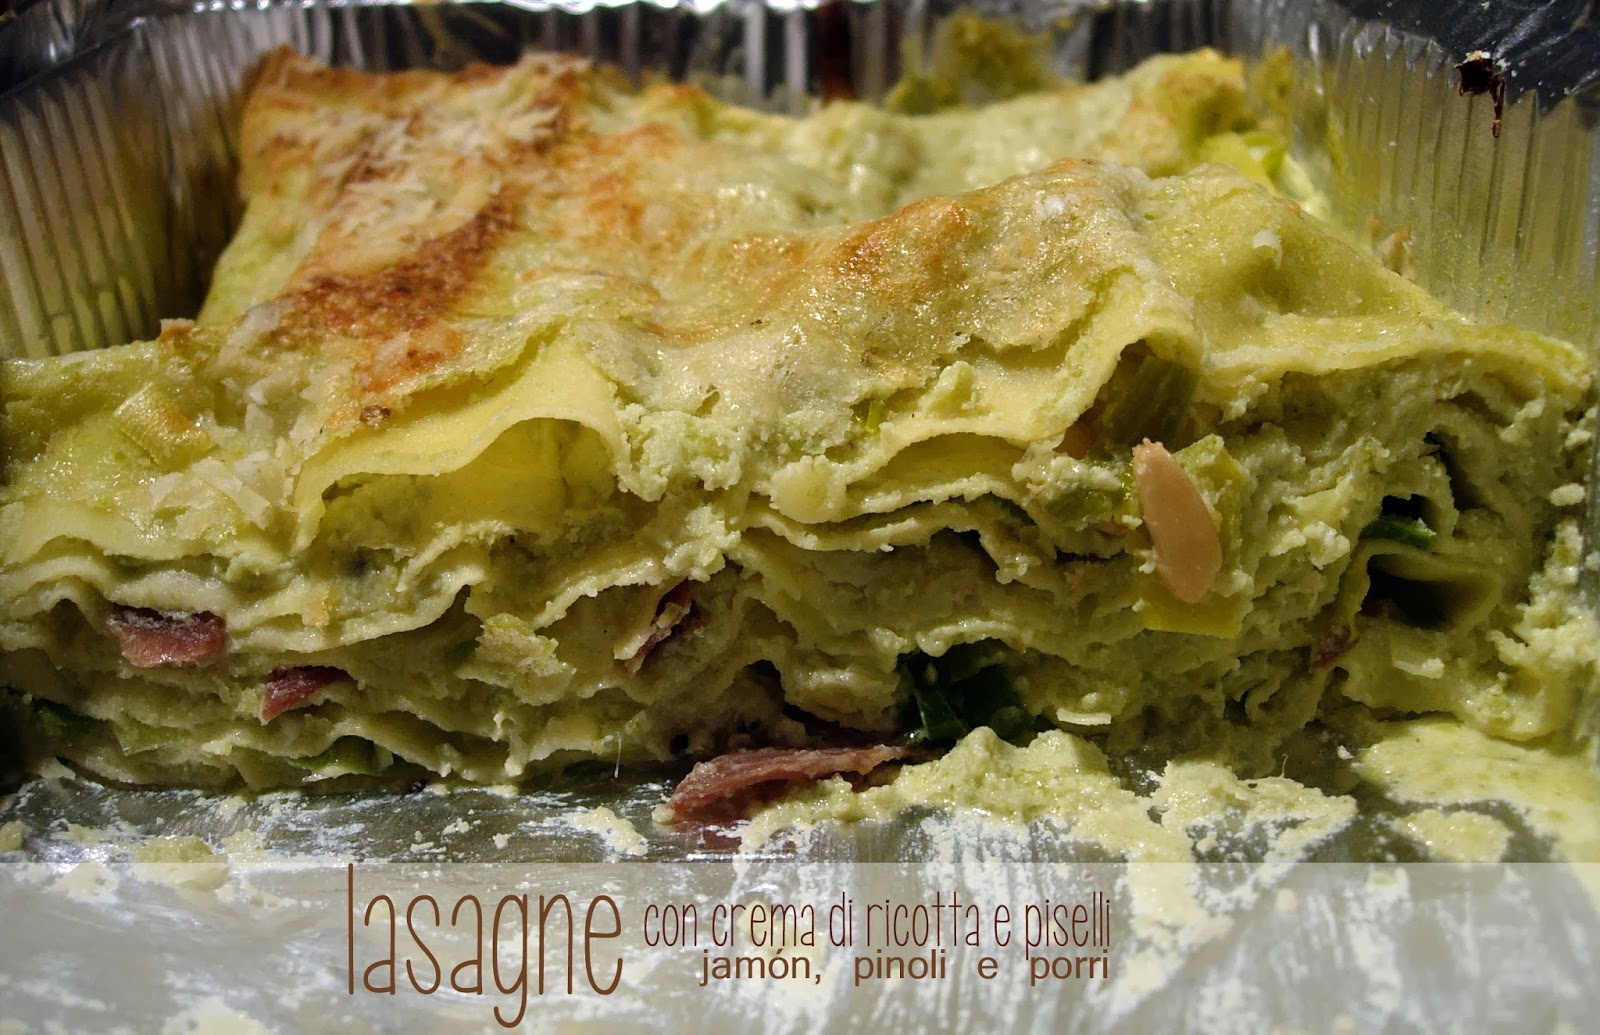 lasagne con crema di ricotta e piselli, jamón, pinoli e porri